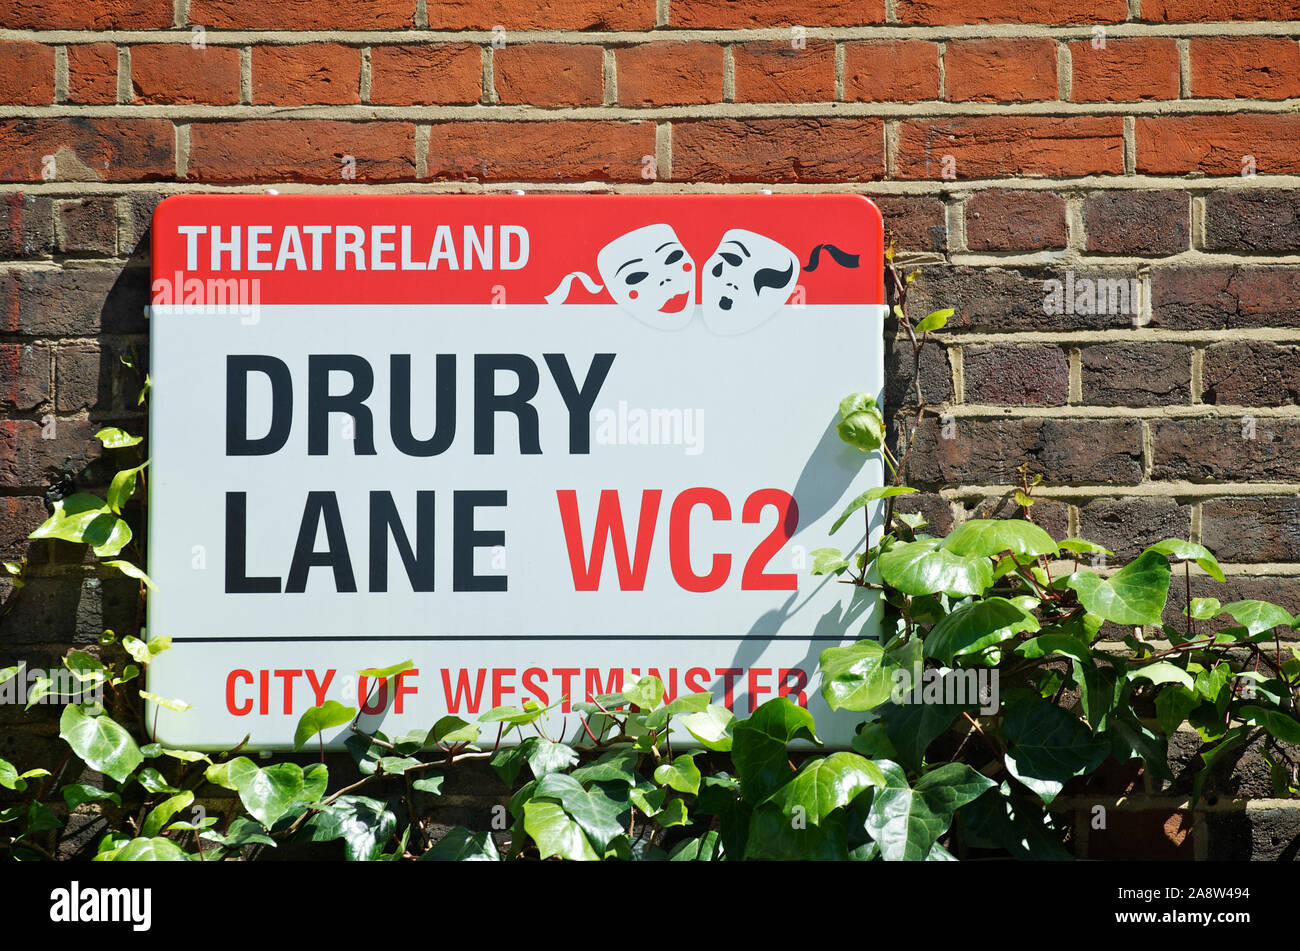 LONDON - 25. MAI 2012: Zeichen für Drury Lane verfügt über einen Theatreland Bezeichnung mit theatralischen Masken im Sommer Sonnenlicht. Stockfoto